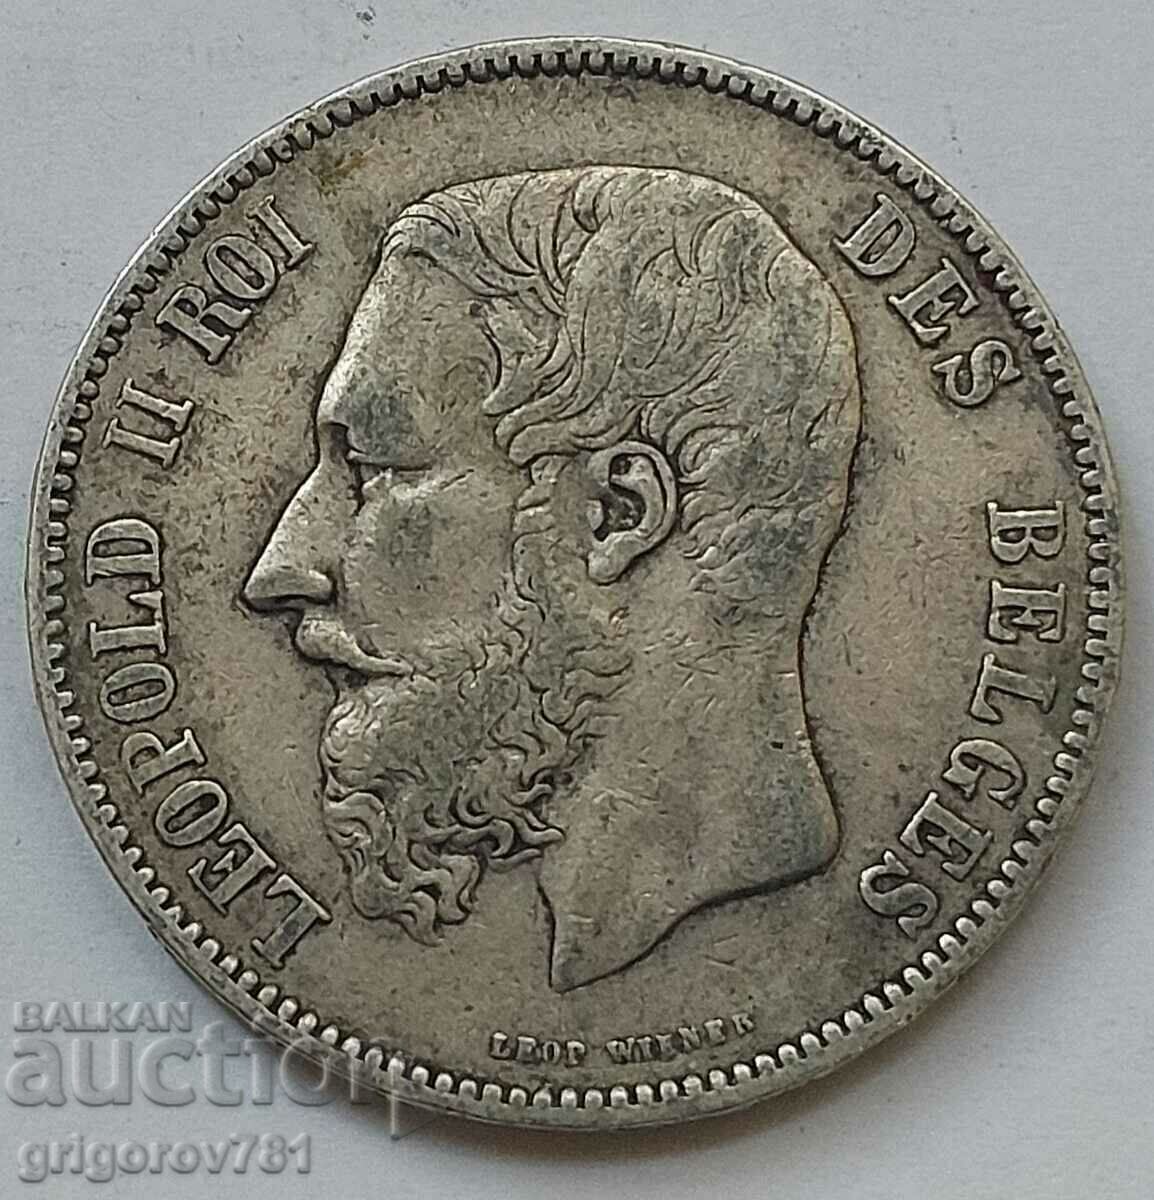 5 Francs Silver Belgium 1875 Silver Coin #183